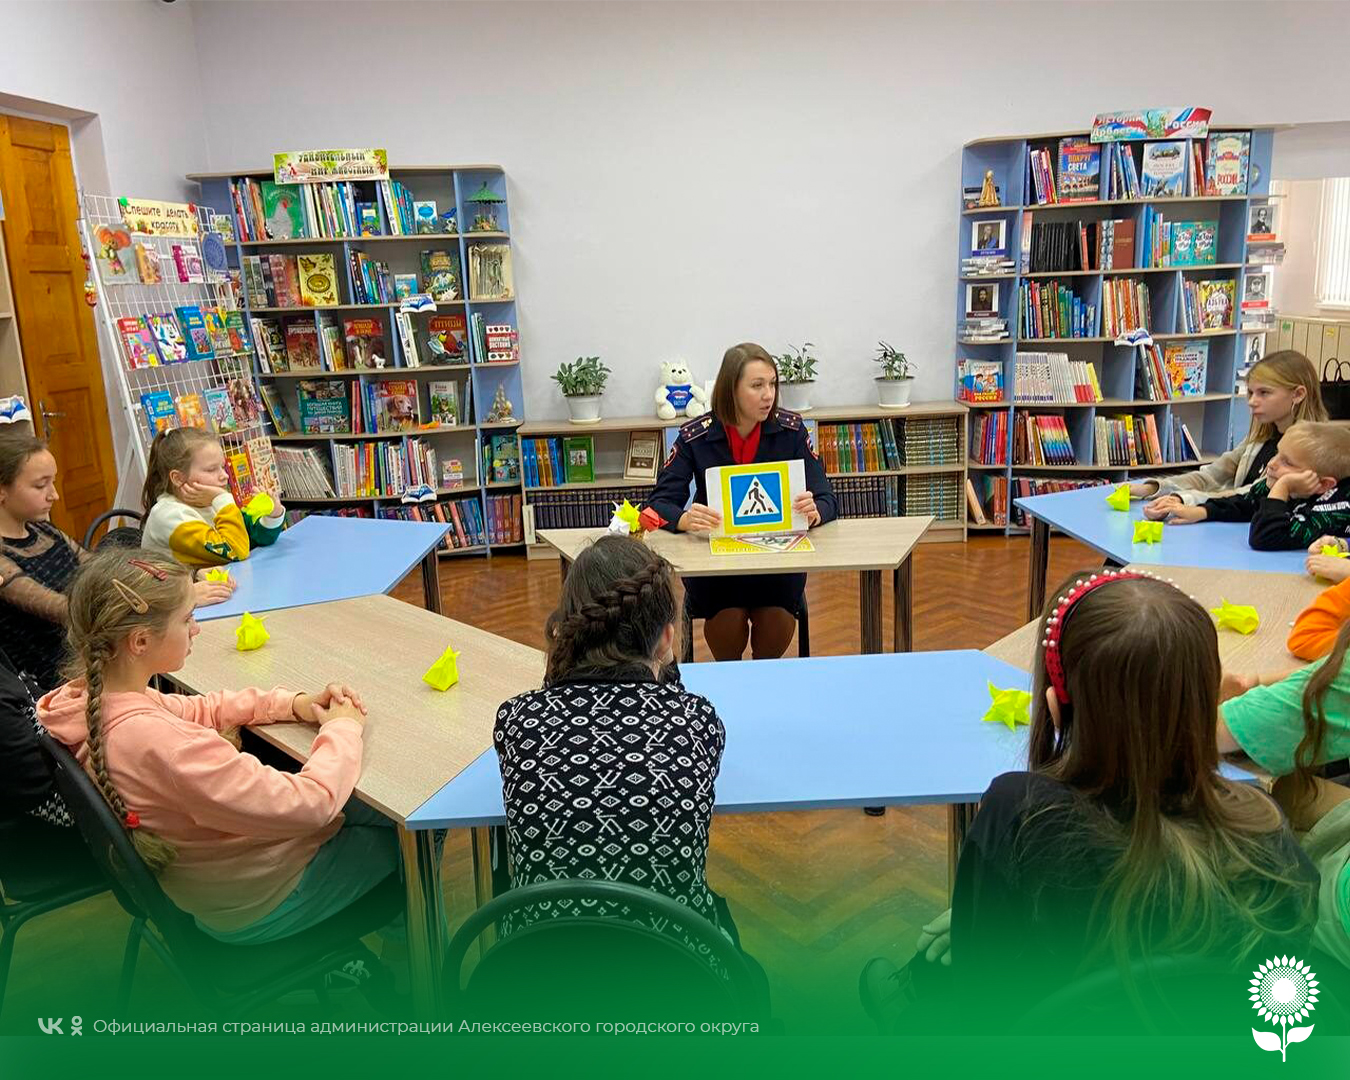 В Центральной детской библиотеке прошла встреча сотрудника Госавтоинспекции ОМВД России по Алексеевскому городскому округу со школьниками.